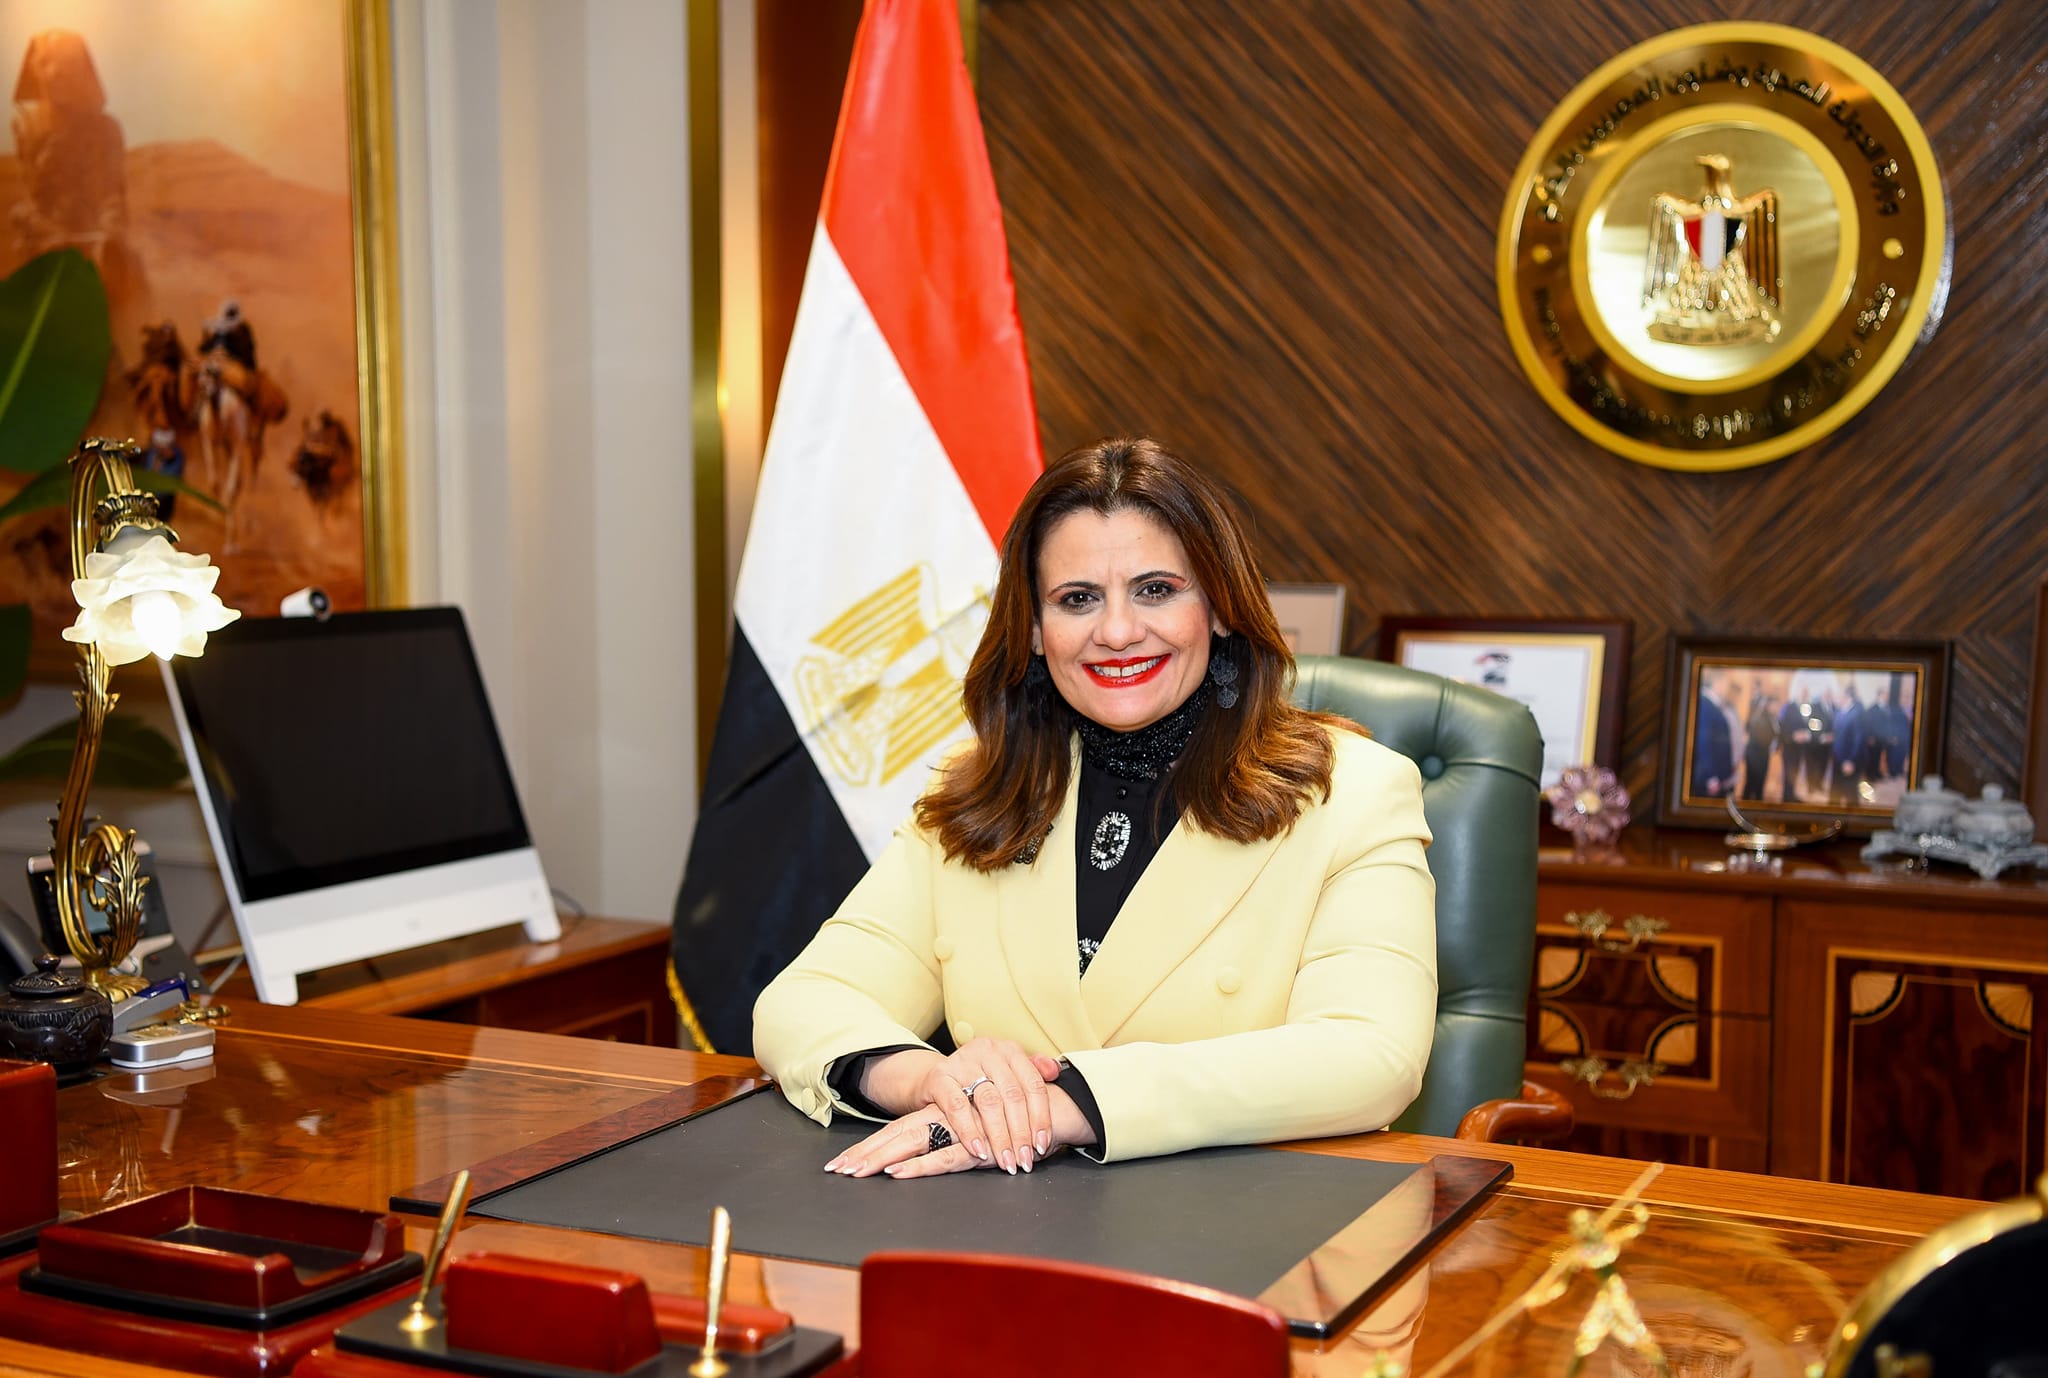 وزيرة الهجرة تستقبل سفيرة البحرين لبحث المزيد من الاستثمارات المحلية والأجنبية ودعم العلاقات بين البلدين